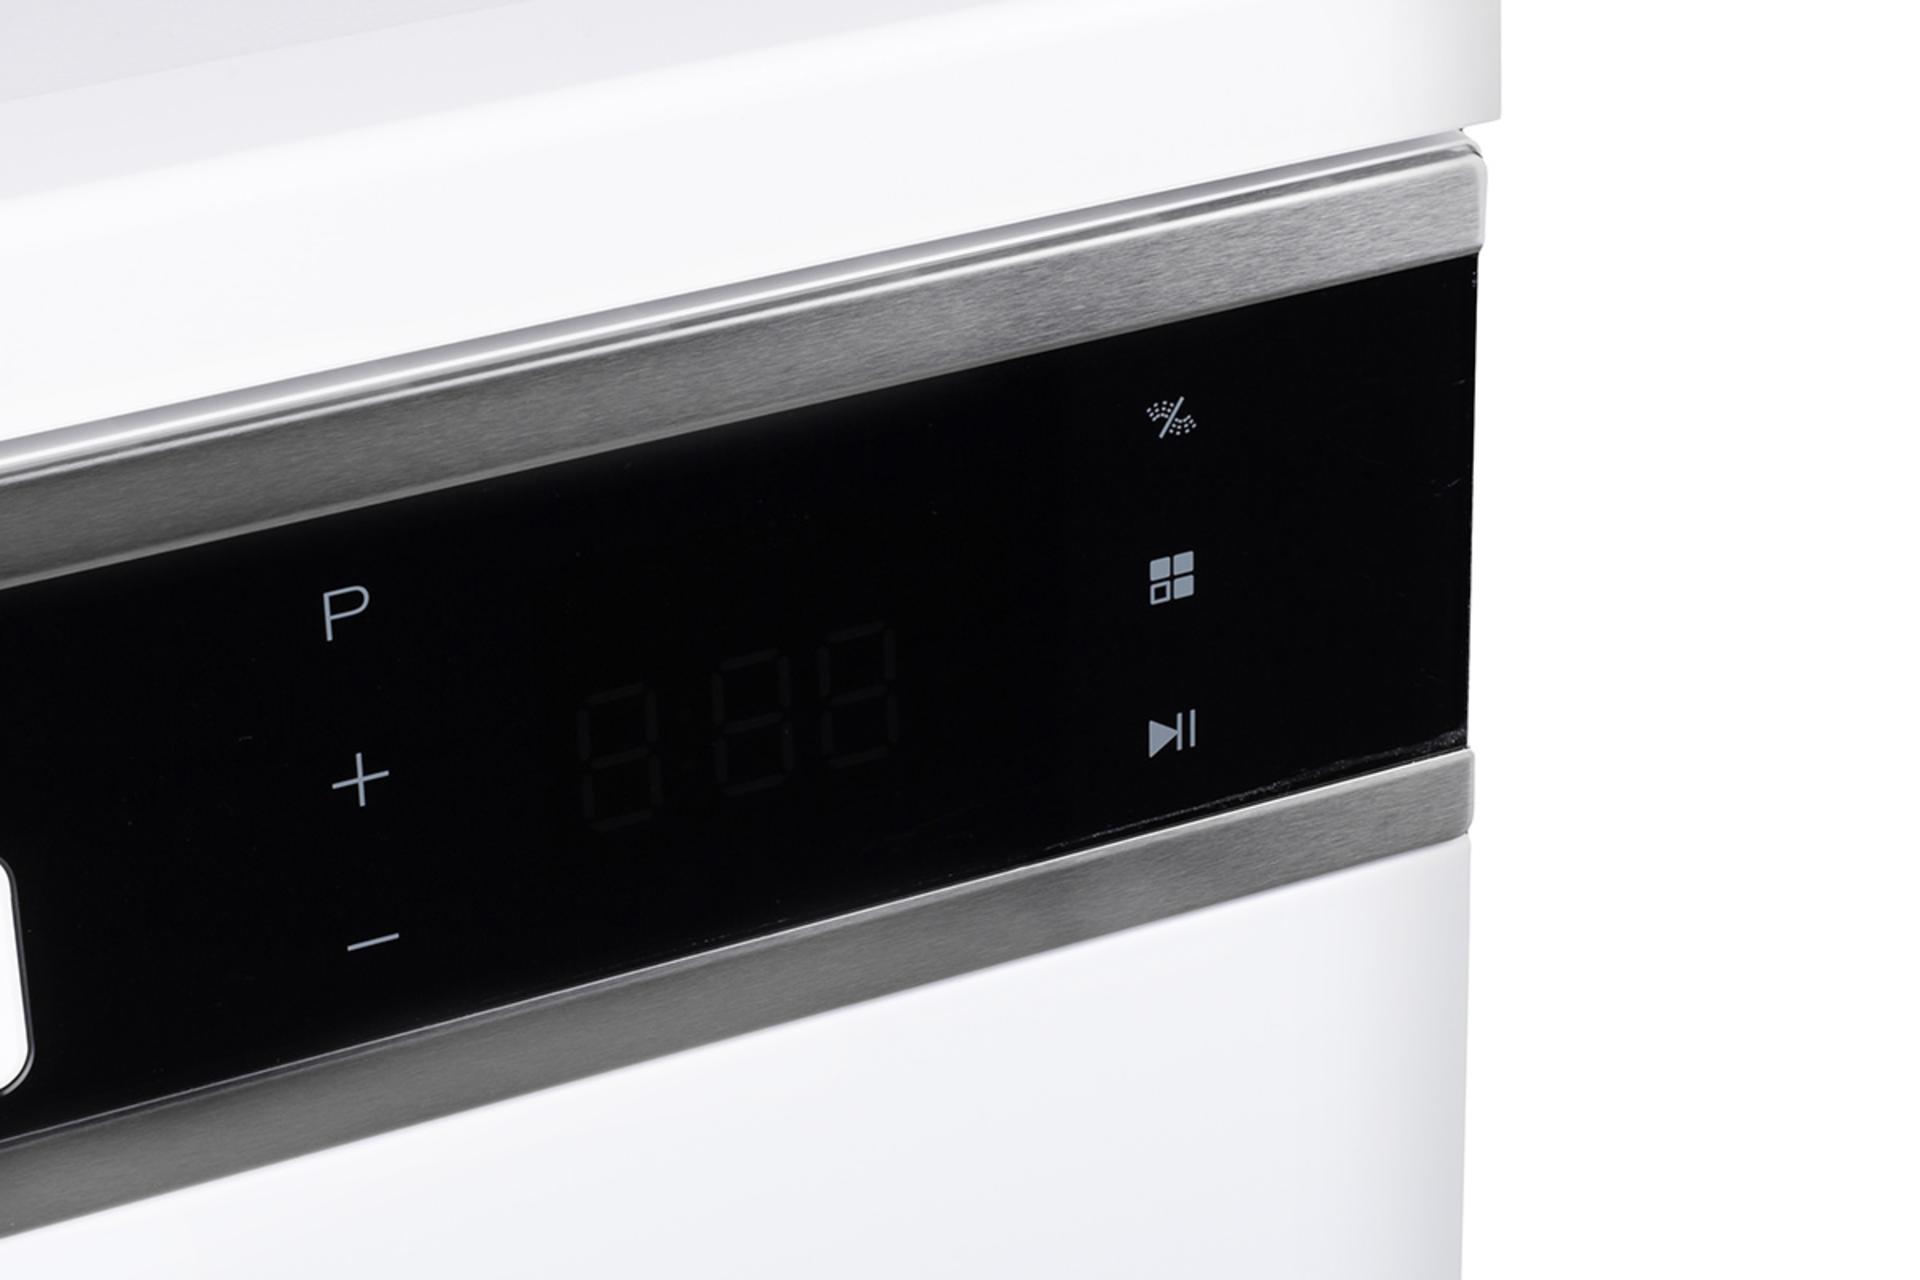 ماشین ظرفشویی الگانس Elegance EL9016 نمای کنترل پنل لمسی